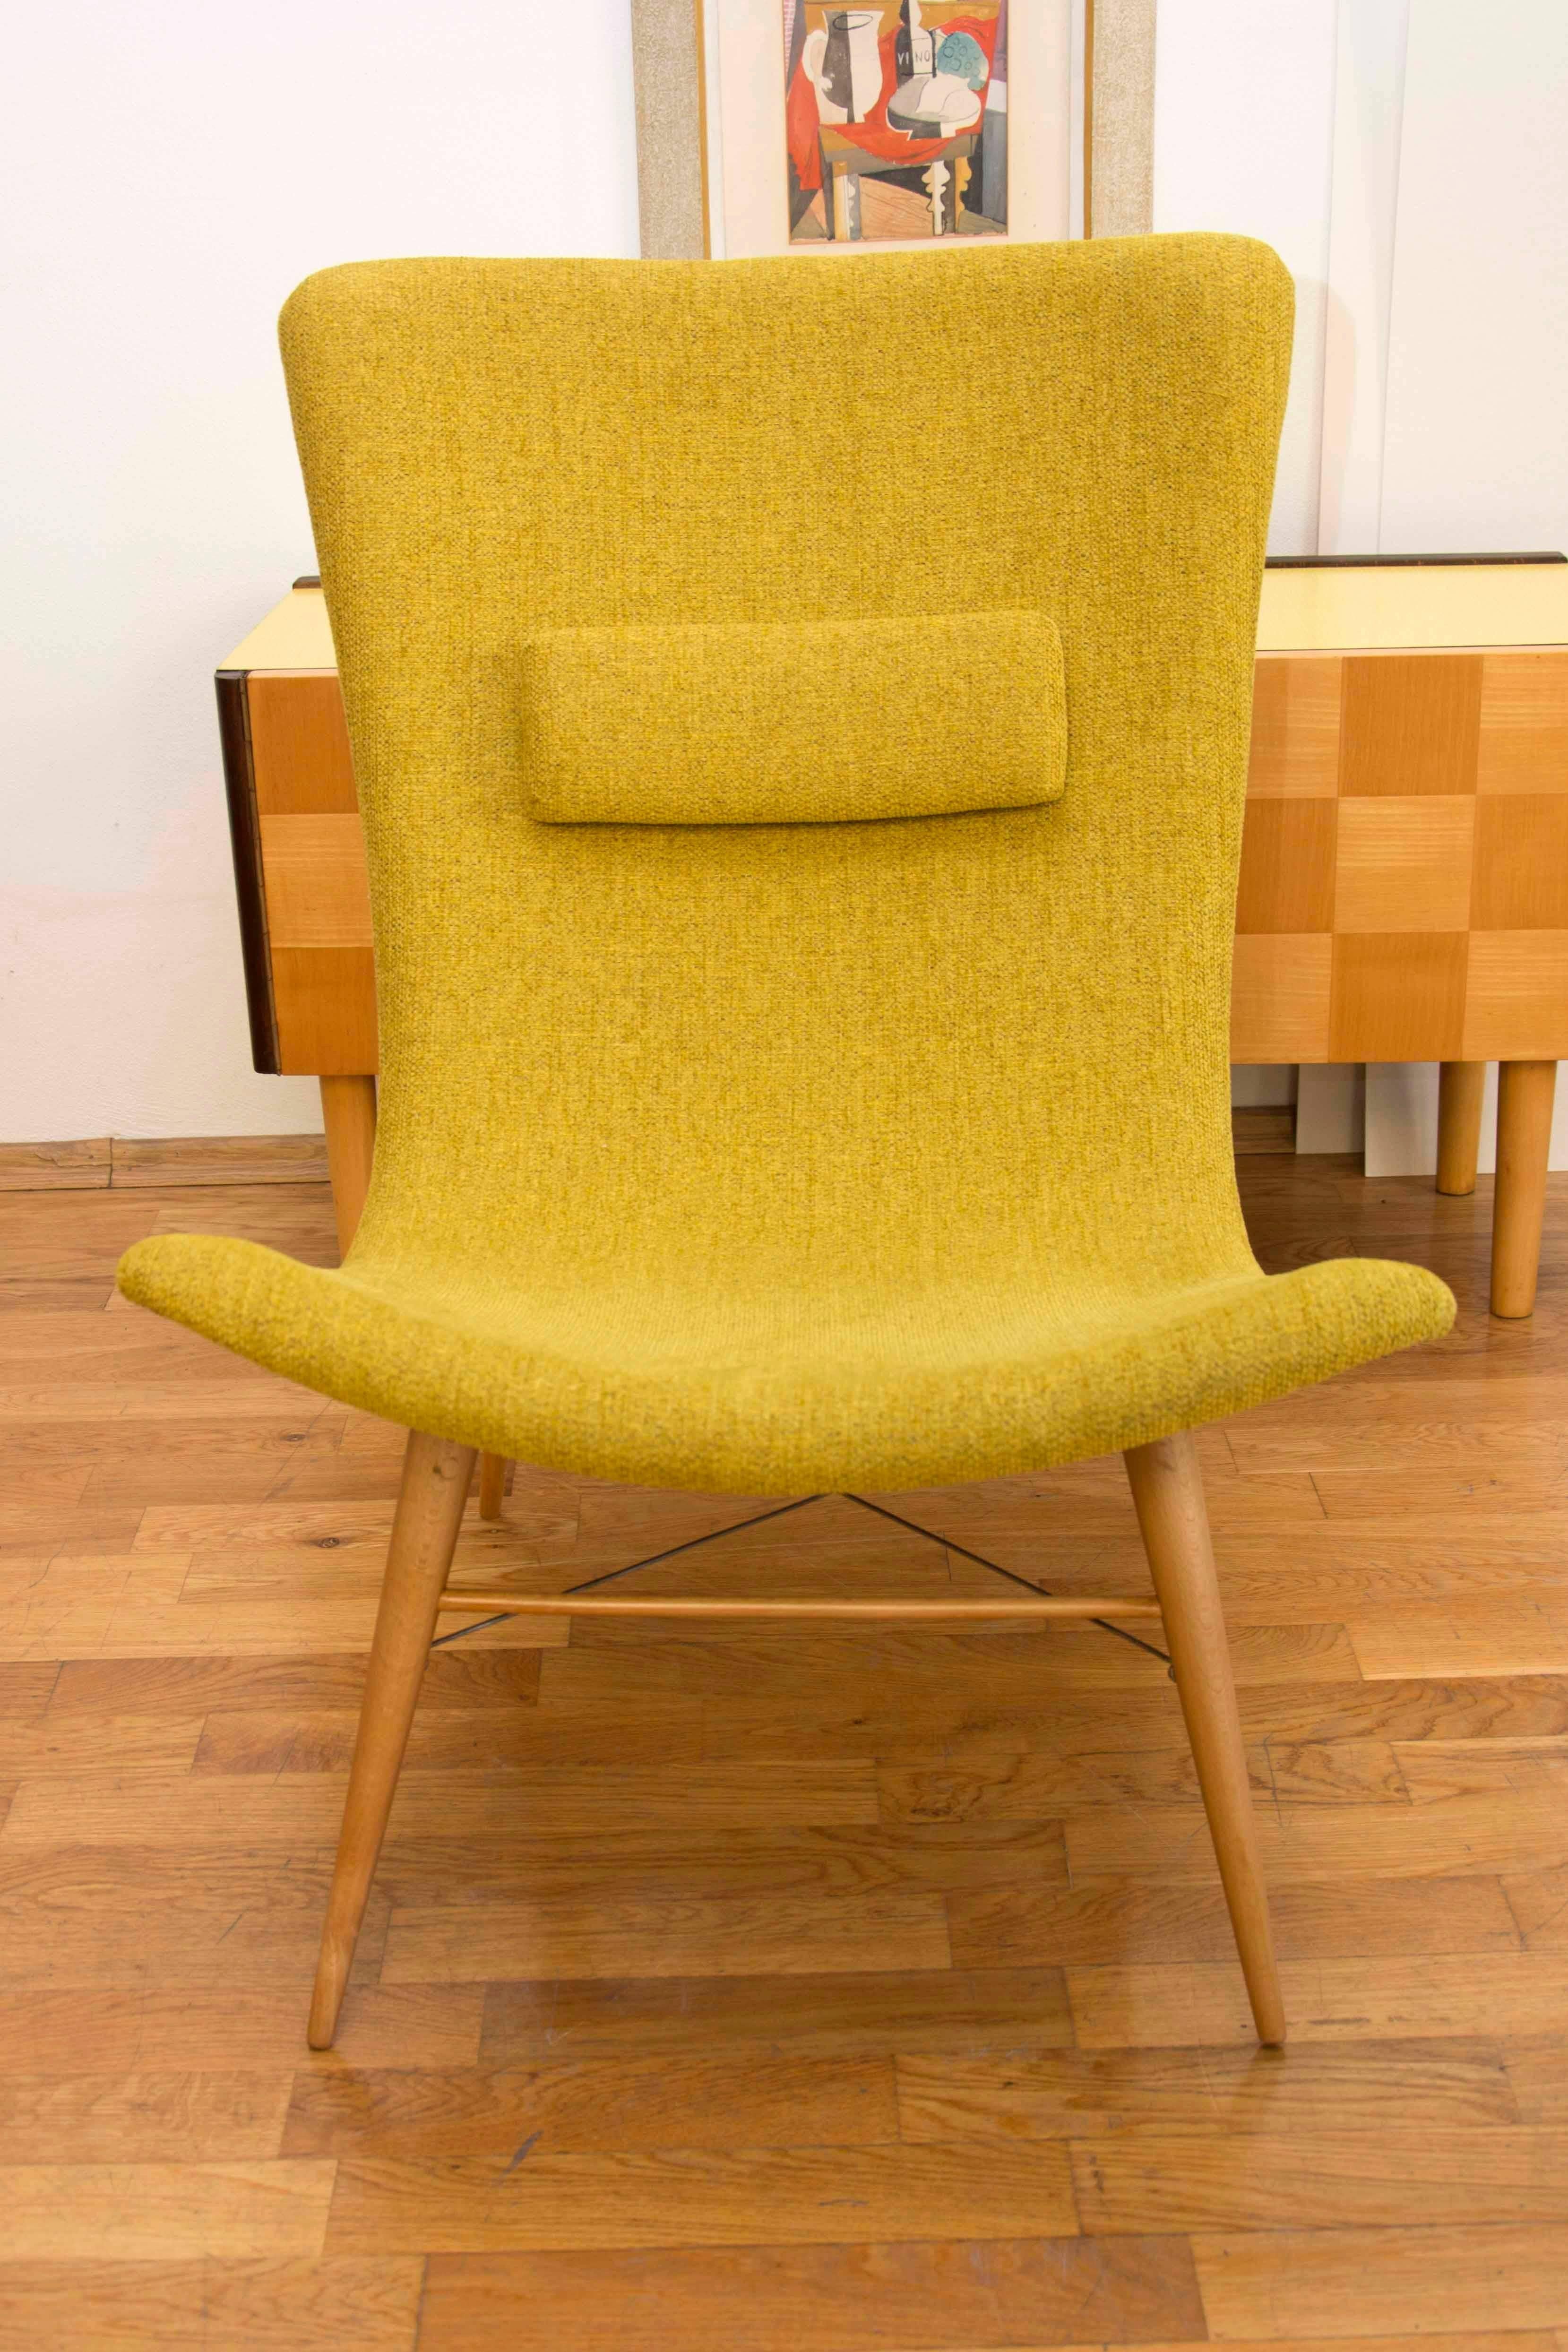 Laminated Pair of Lounge Chairs by Miroslav Navratil for Český Nábytek, 1959